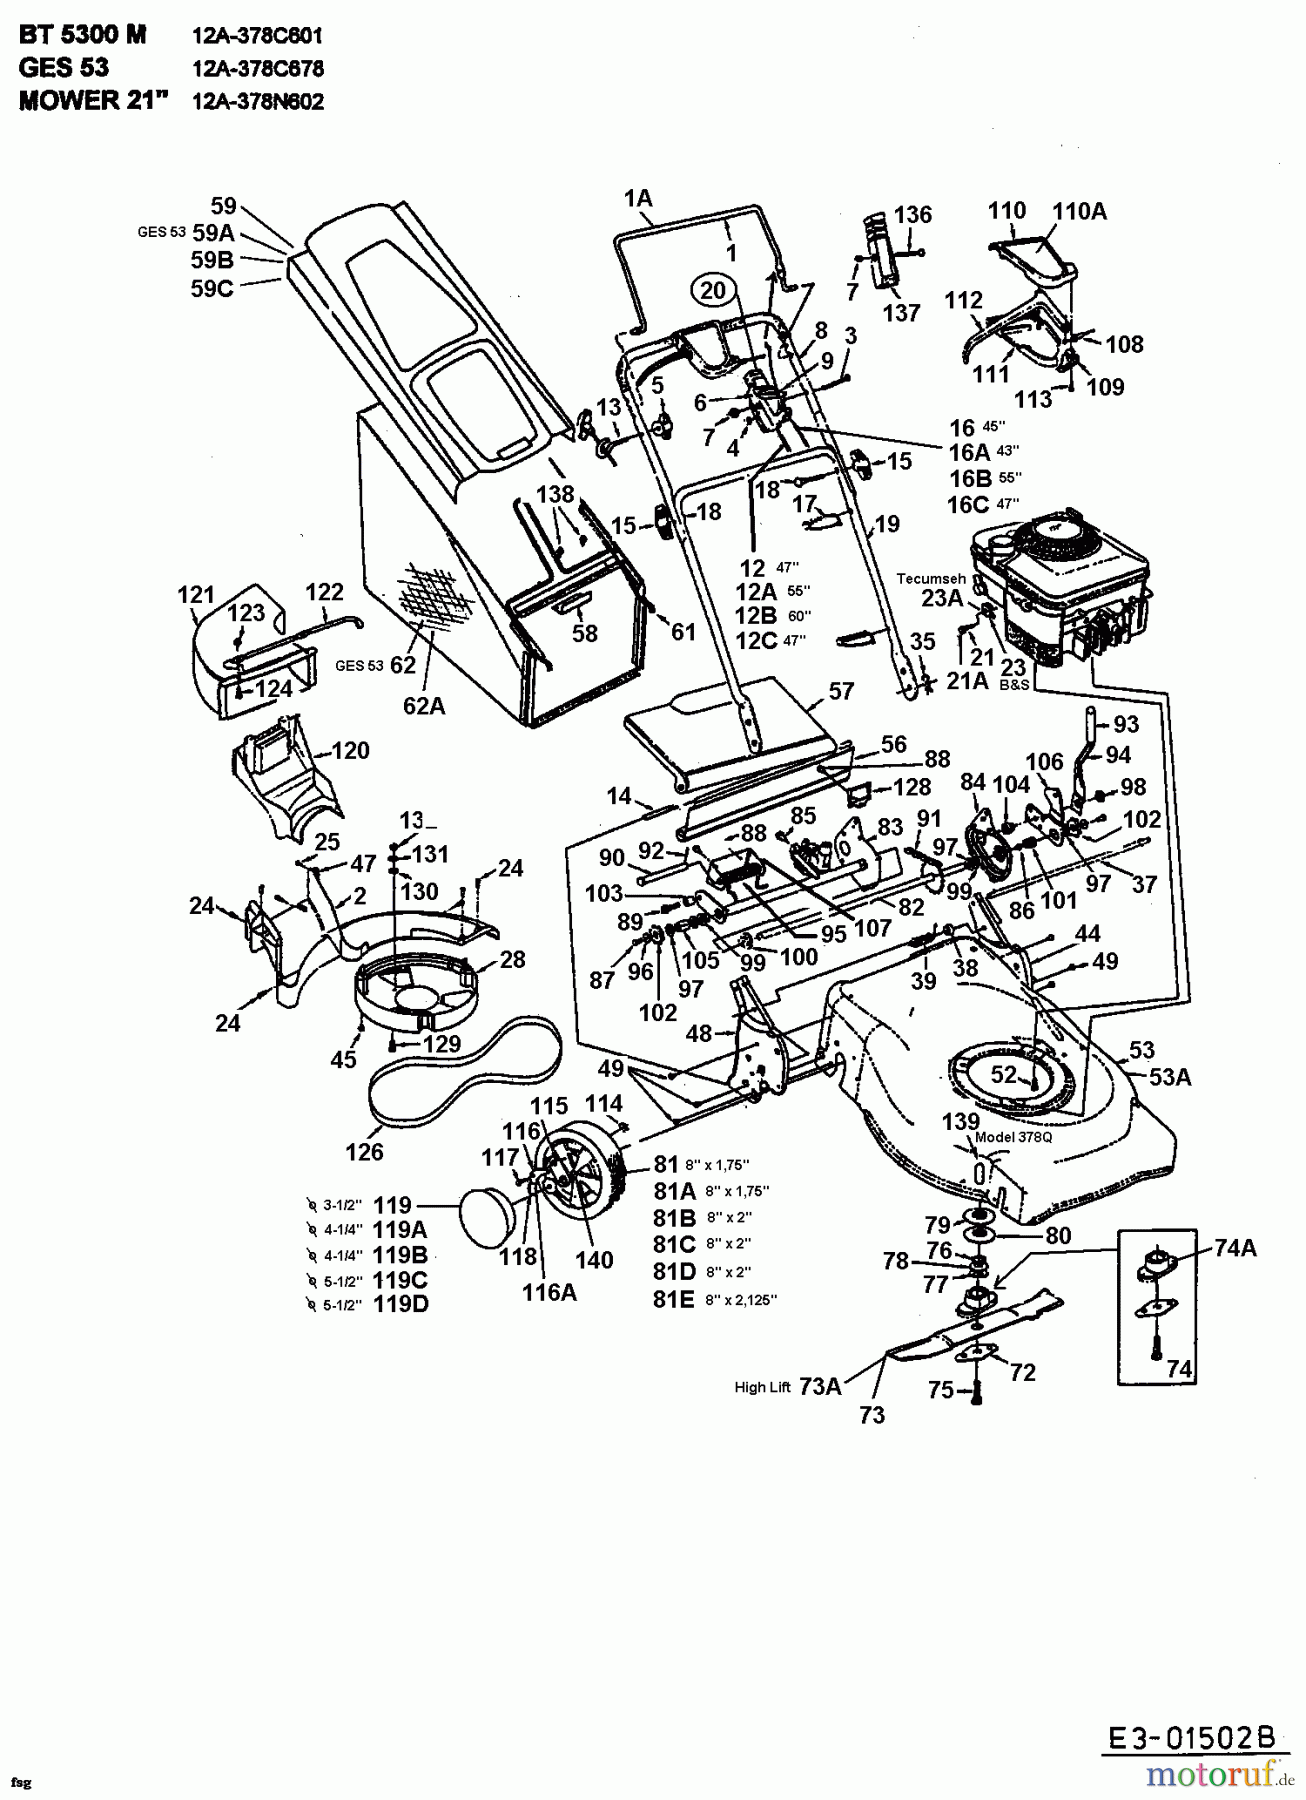  MTD Motormäher mit Antrieb GES 53 12A-378C678  (2000) Grundgerät